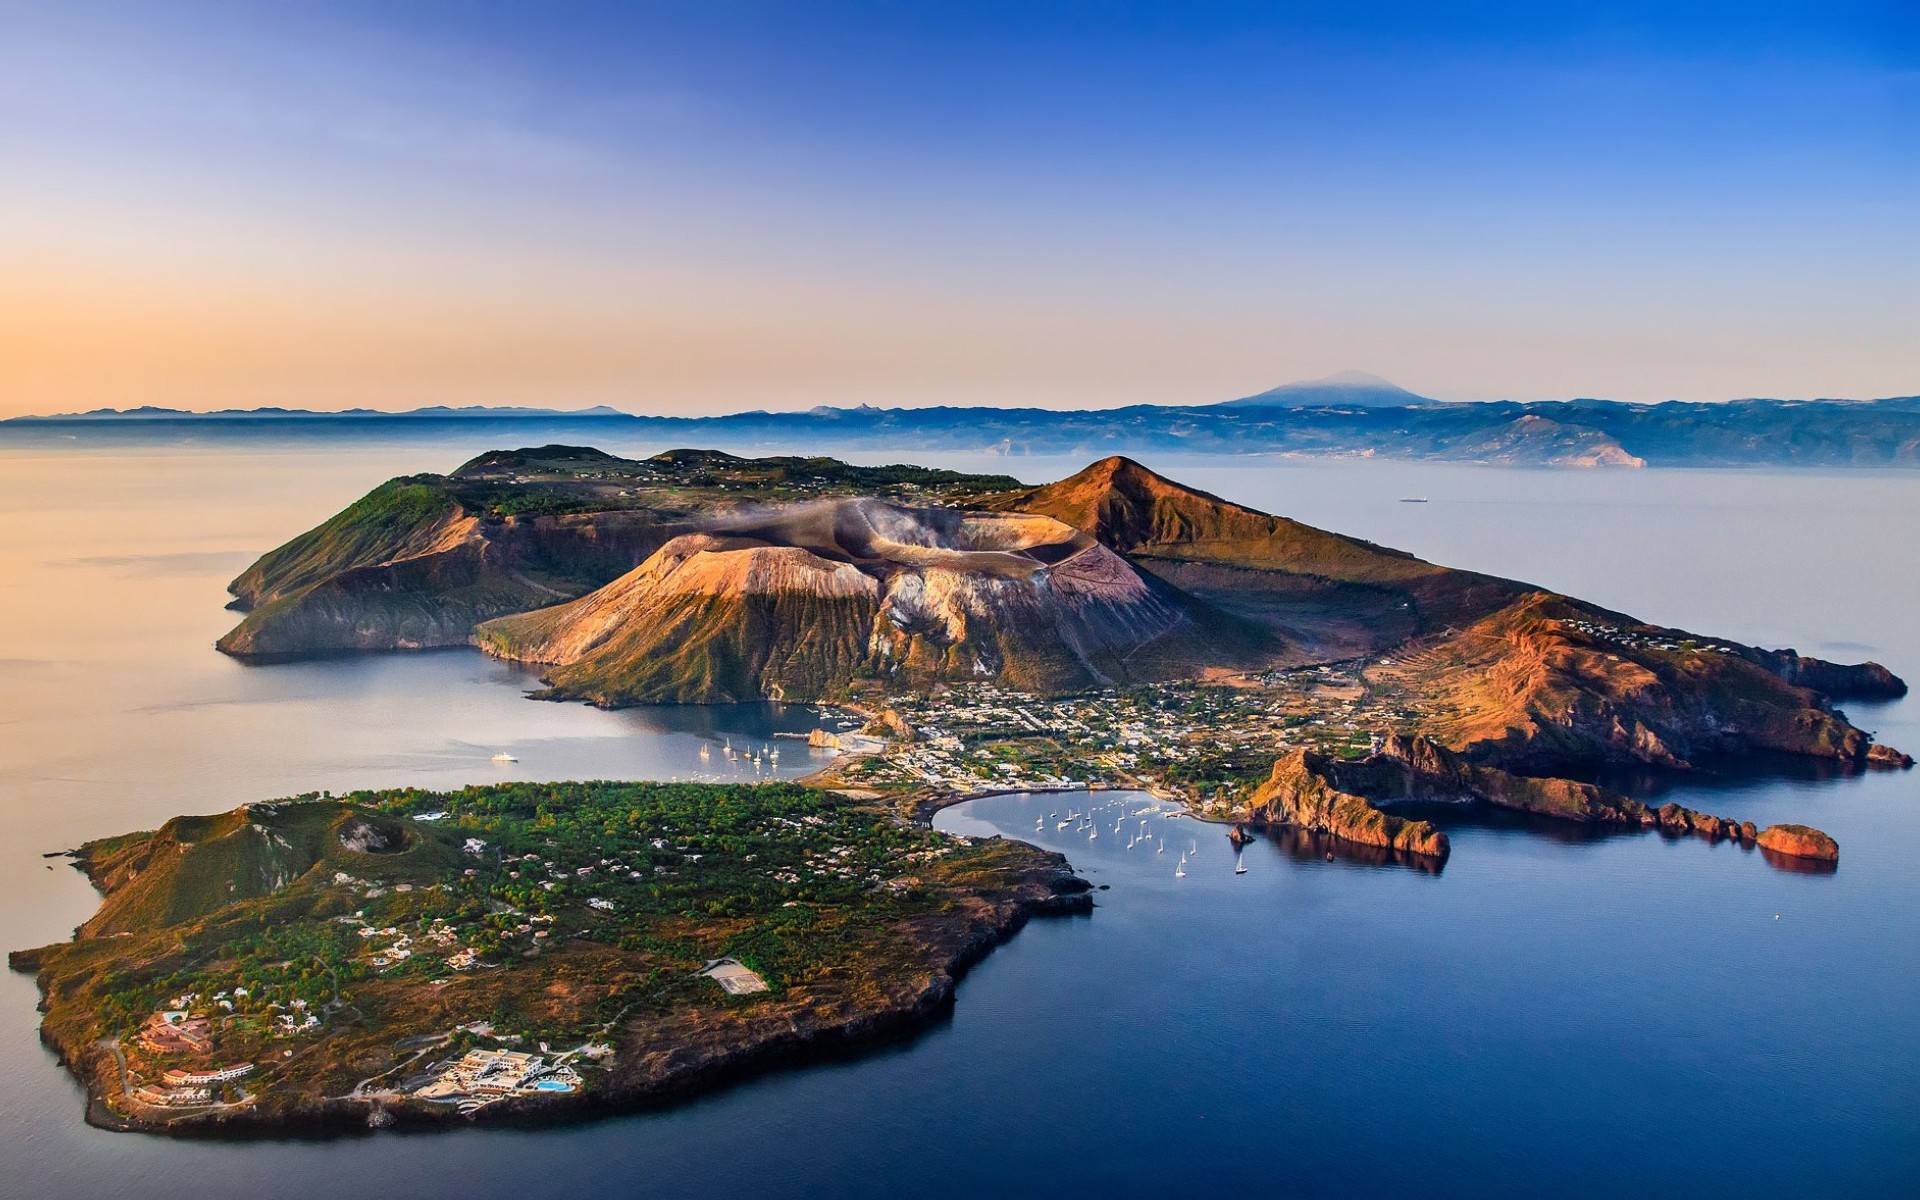 Скачать обои Эолийские Острова на телефон бесплатно